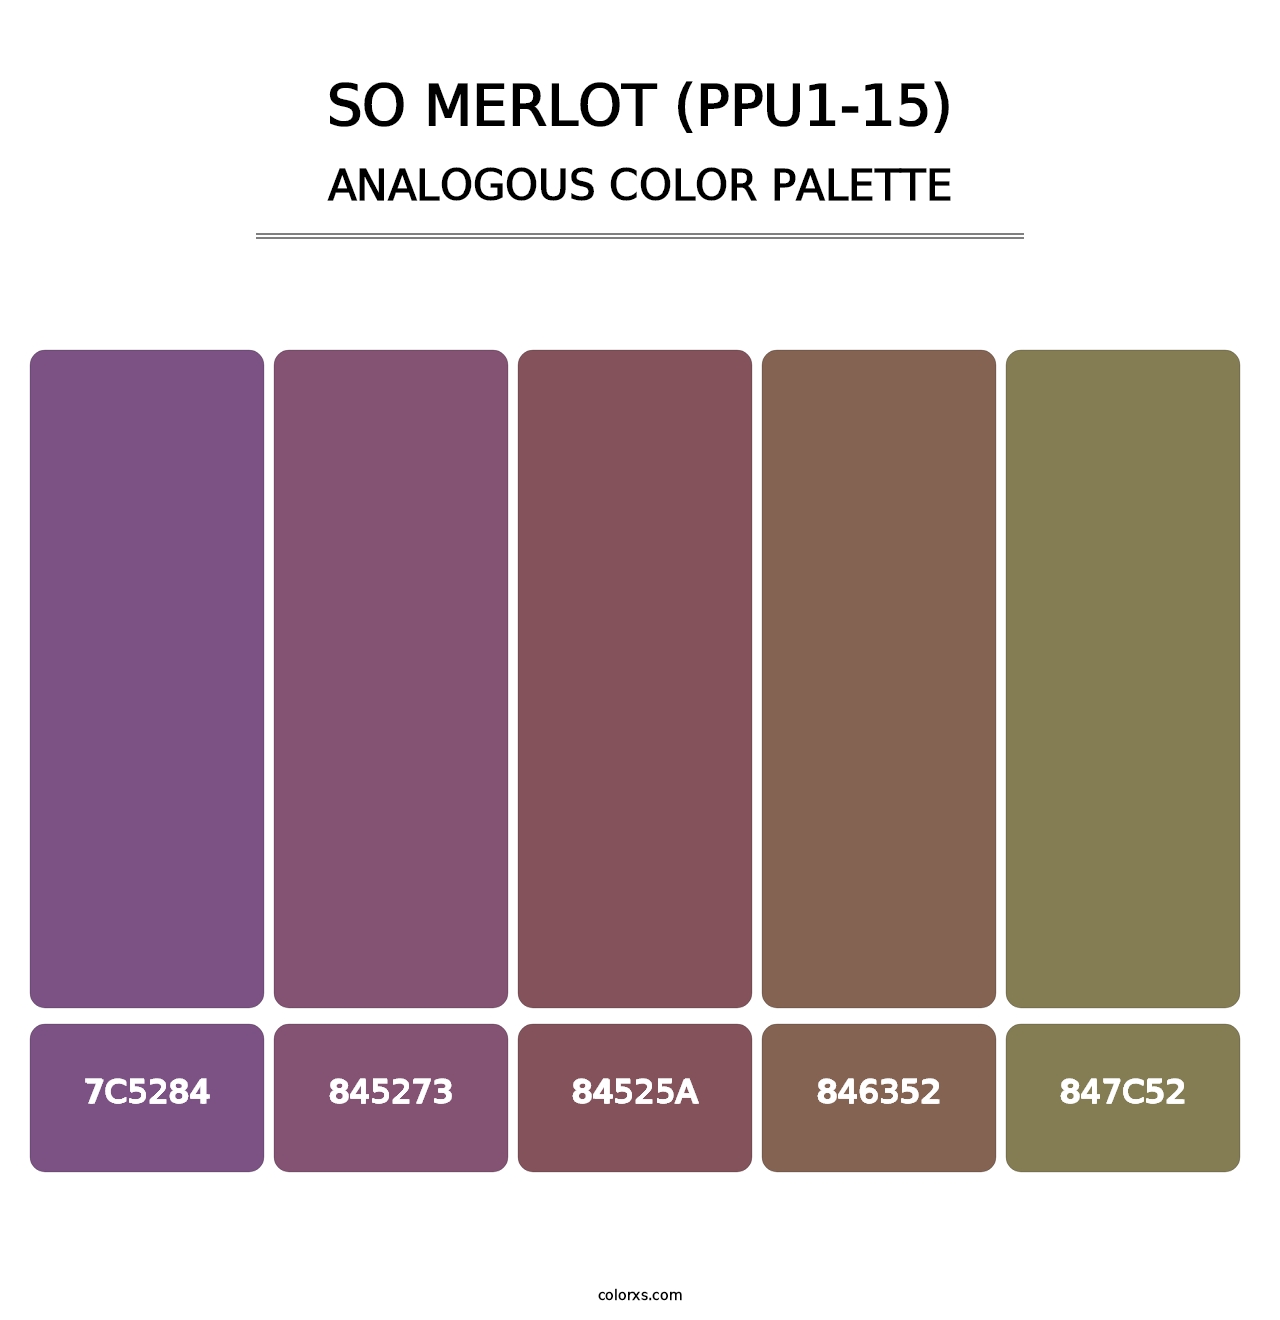 So Merlot (PPU1-15) - Analogous Color Palette